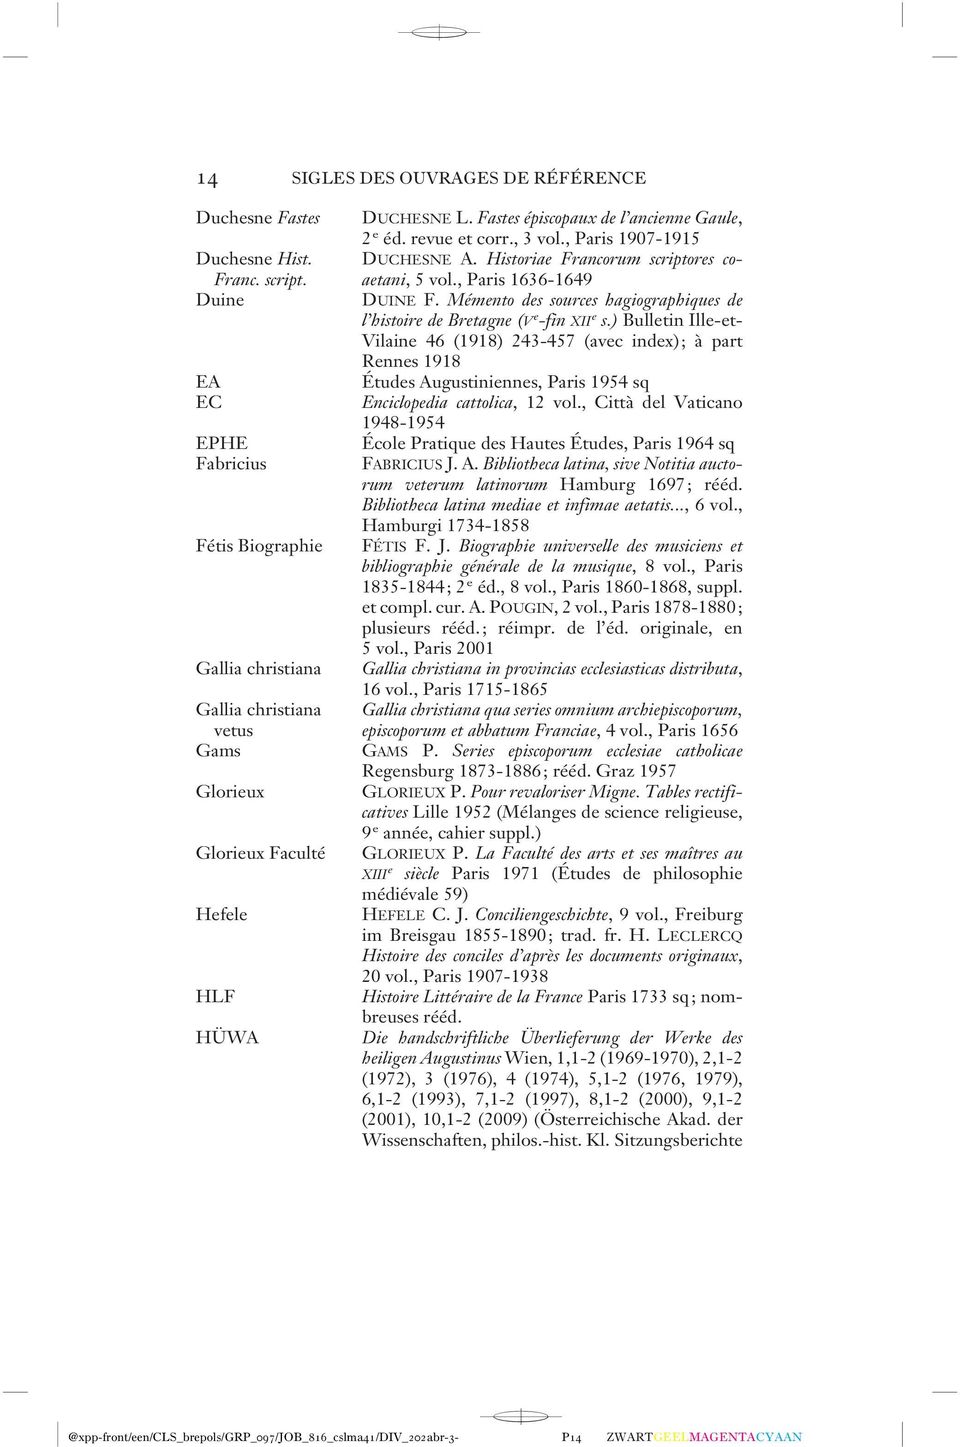 ) Bulletin Ille-et- Vilaine 46 (1918) 243-457 (avec index); à part Rennes 1918 EA Études Augustiniennes, Paris 1954 sq EC Enciclopedia cattolica, 12 vol.